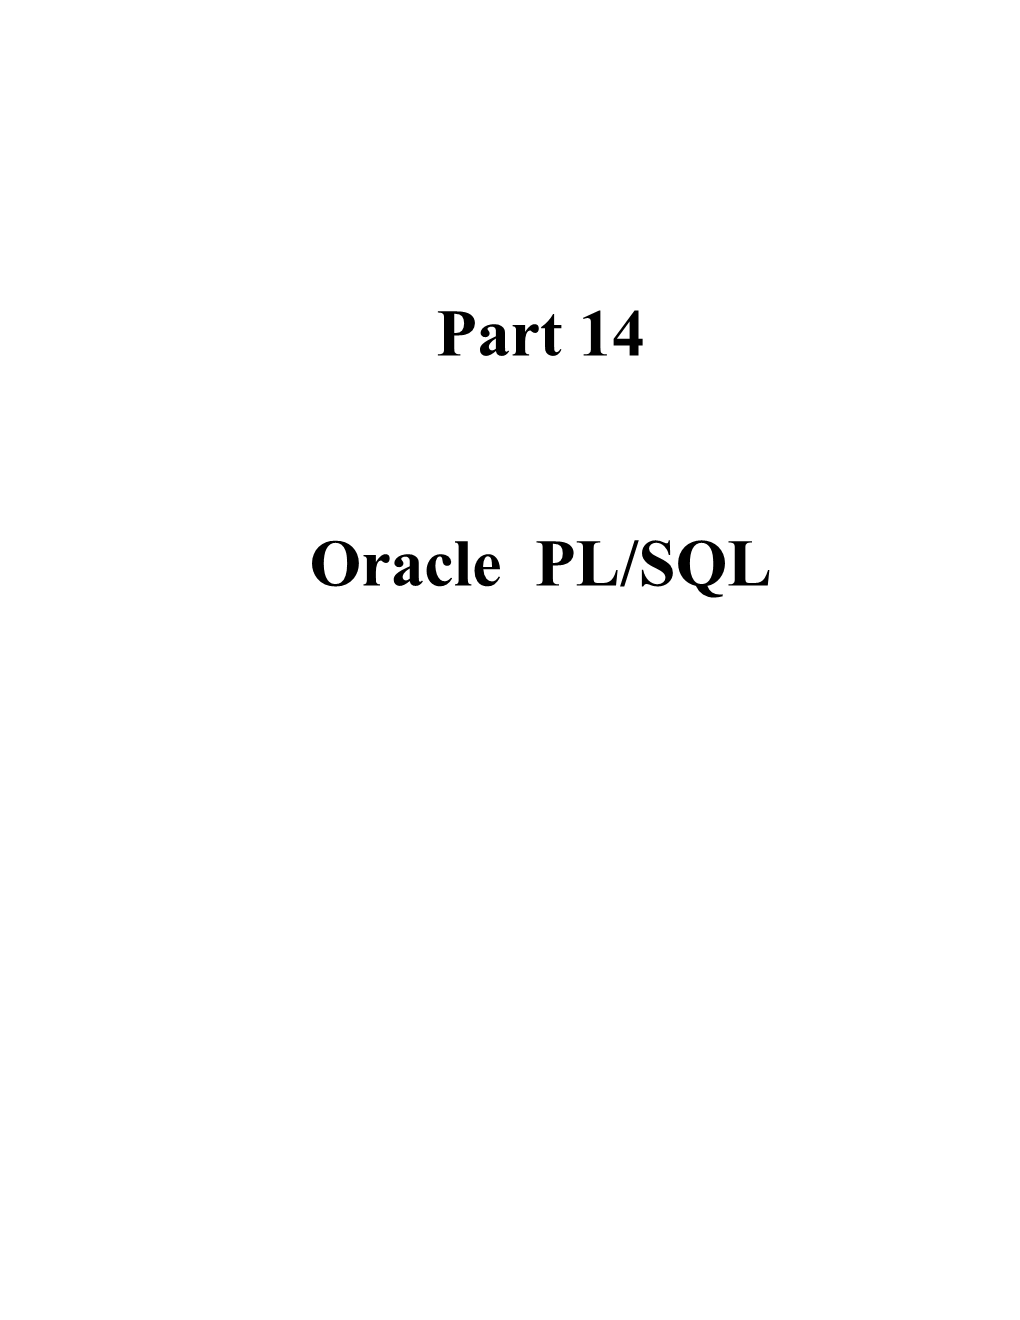 Part 14 - Oracle PL/SQL